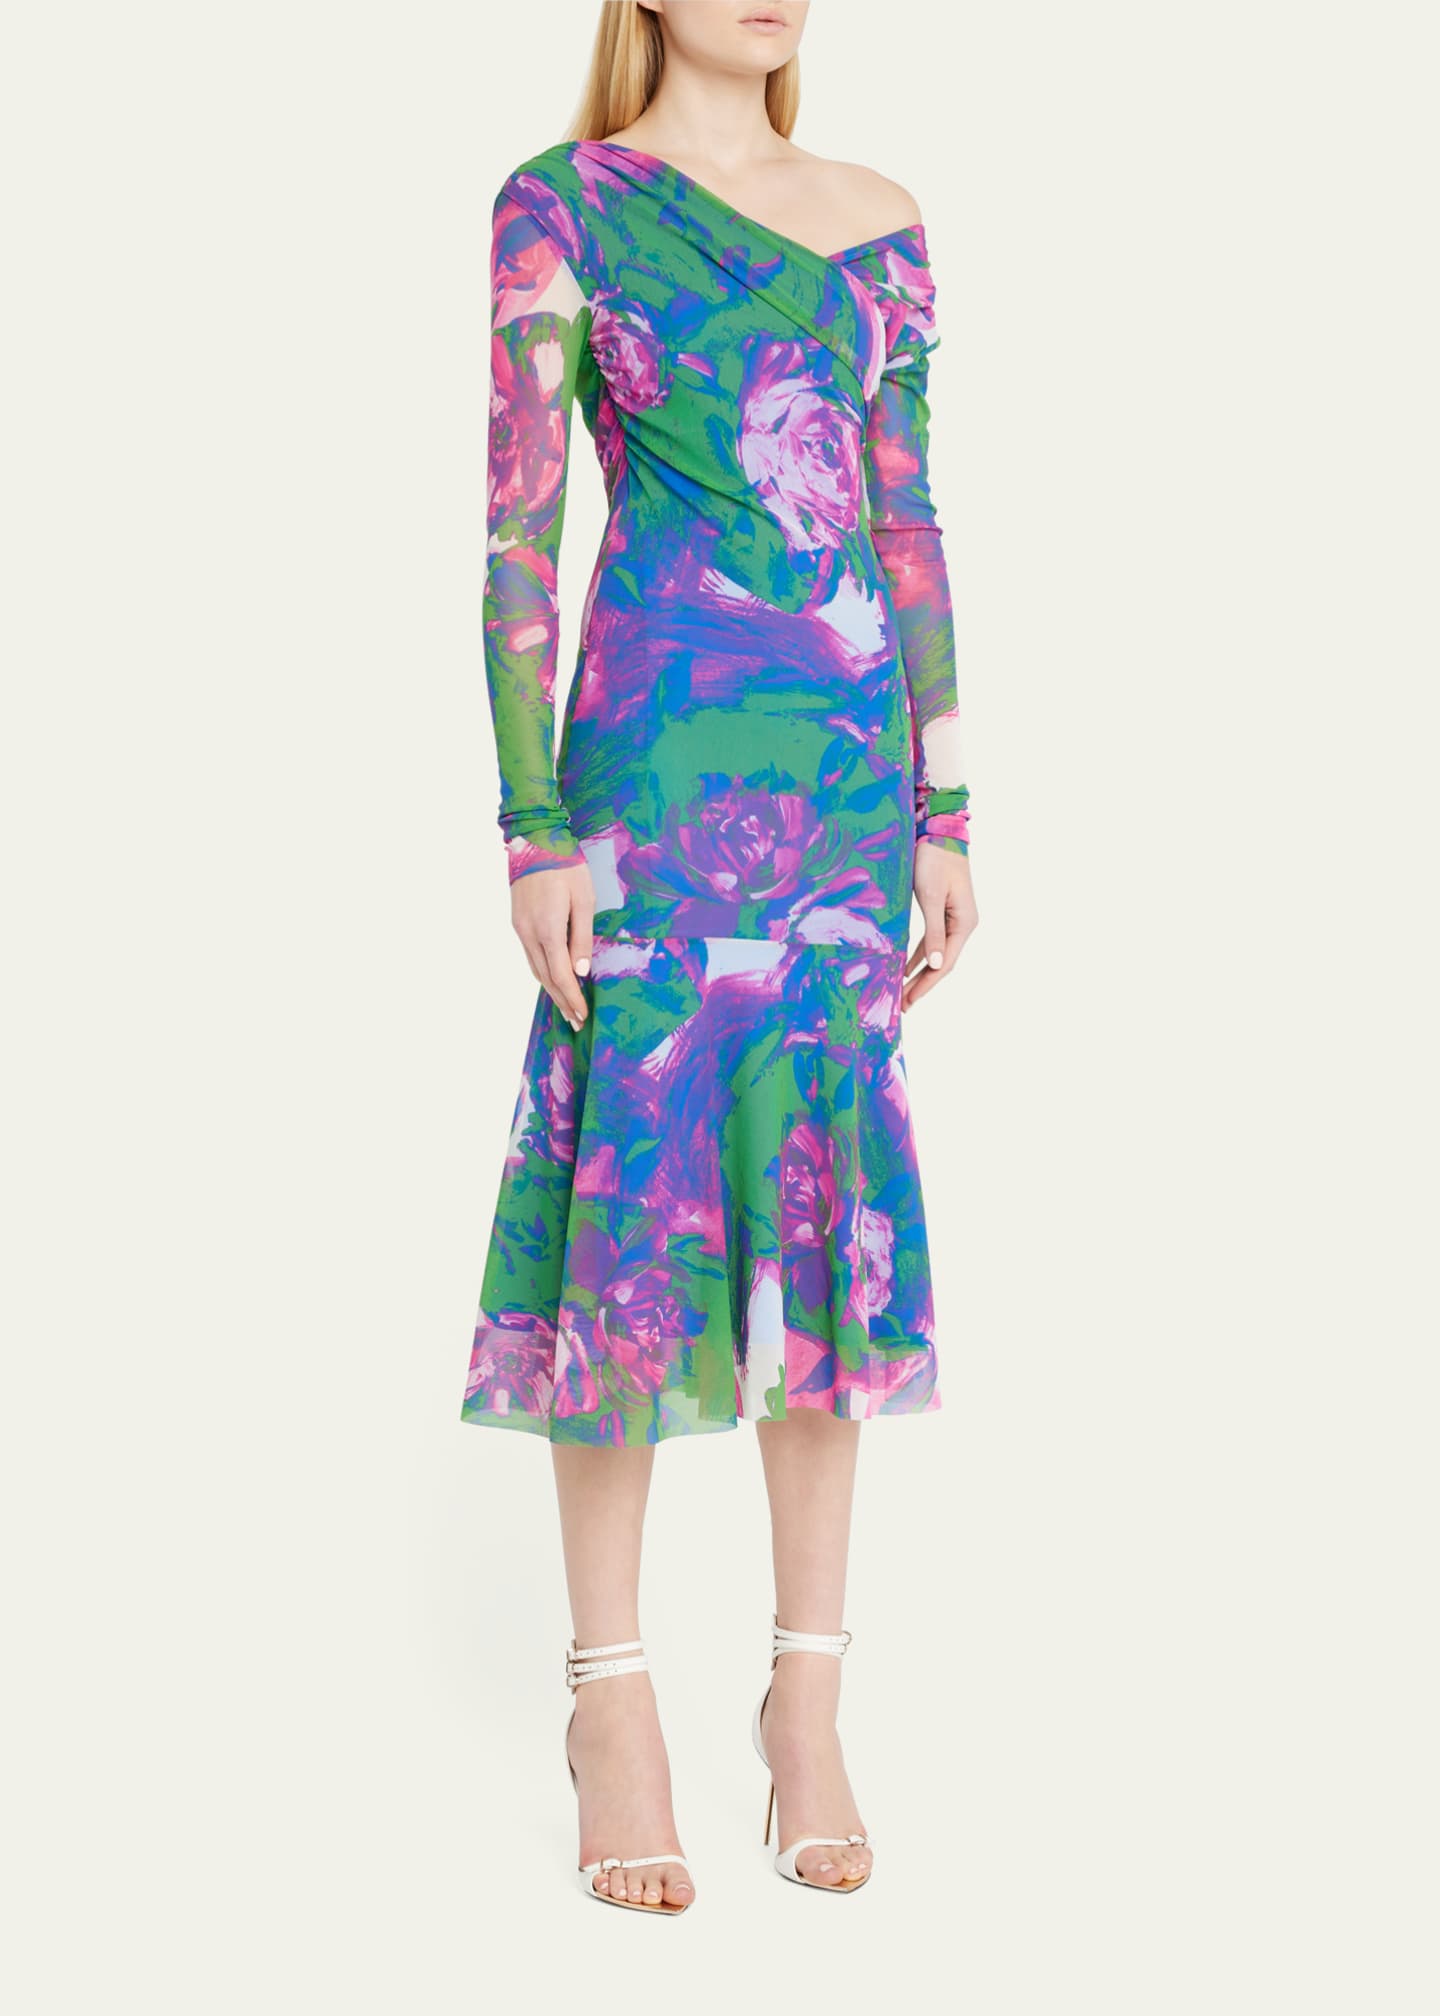 WNDRLUST by Prabal Gurung Floral Off-Shoulder Midi Dress - Bergdorf Goodman